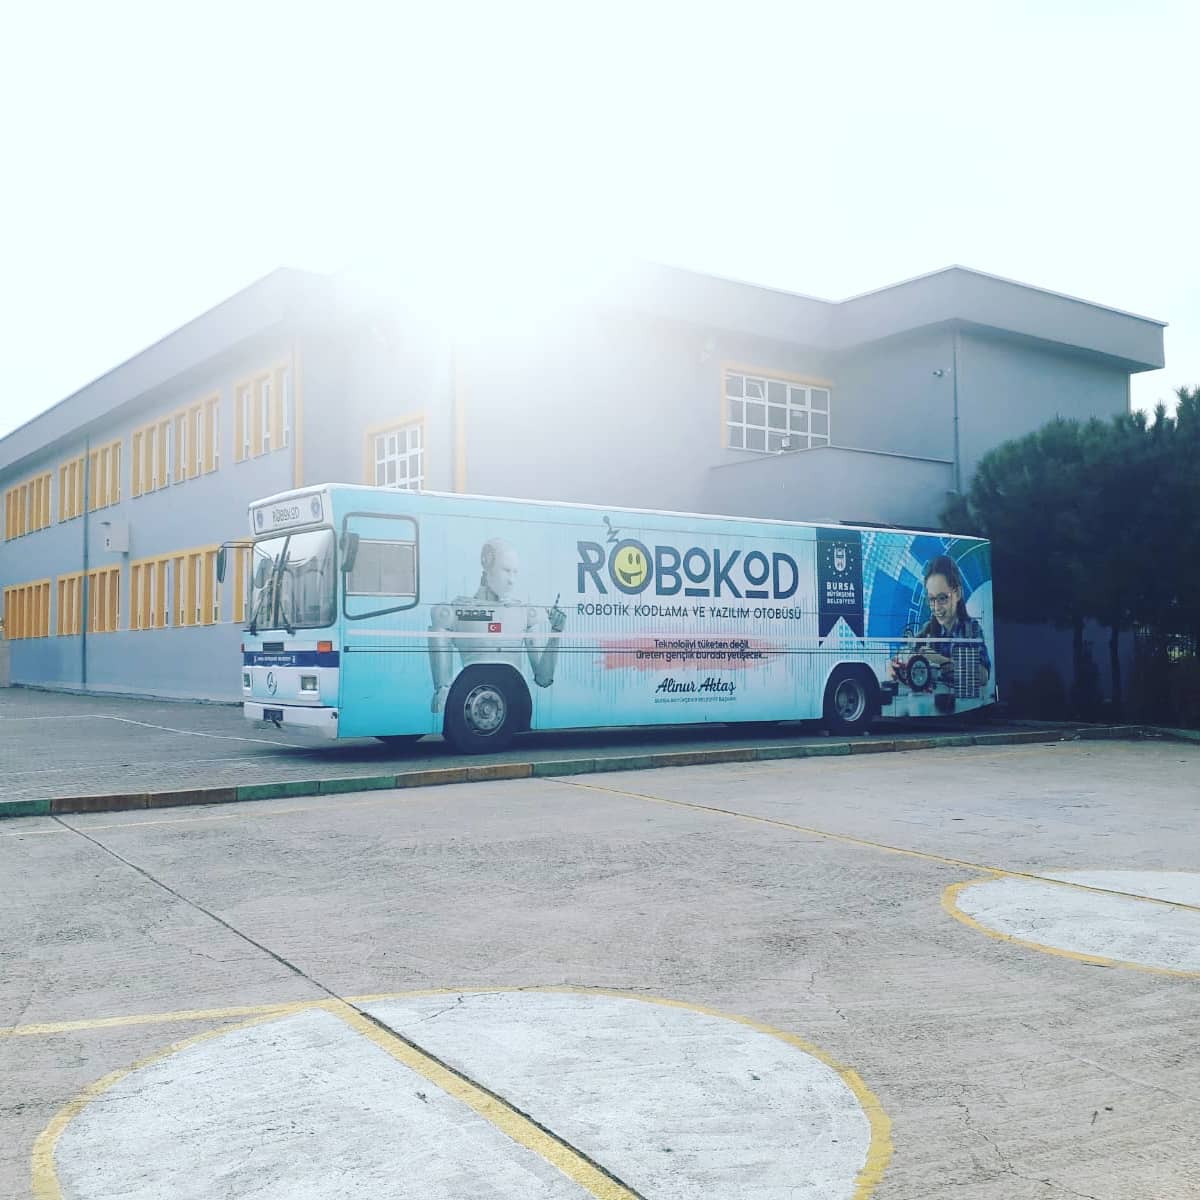 3 Şubat- 3 Nisan 2020 tarihleri arasında Robokod eğitim otobüslerimiz Selçuk Hatun Ortaokulu ve Şehit Zeki Burak Okay Ortaokulu'nda eğitime başlamıştır. #robotikkodlama #robokodbursa #milliteknolojihamlesi